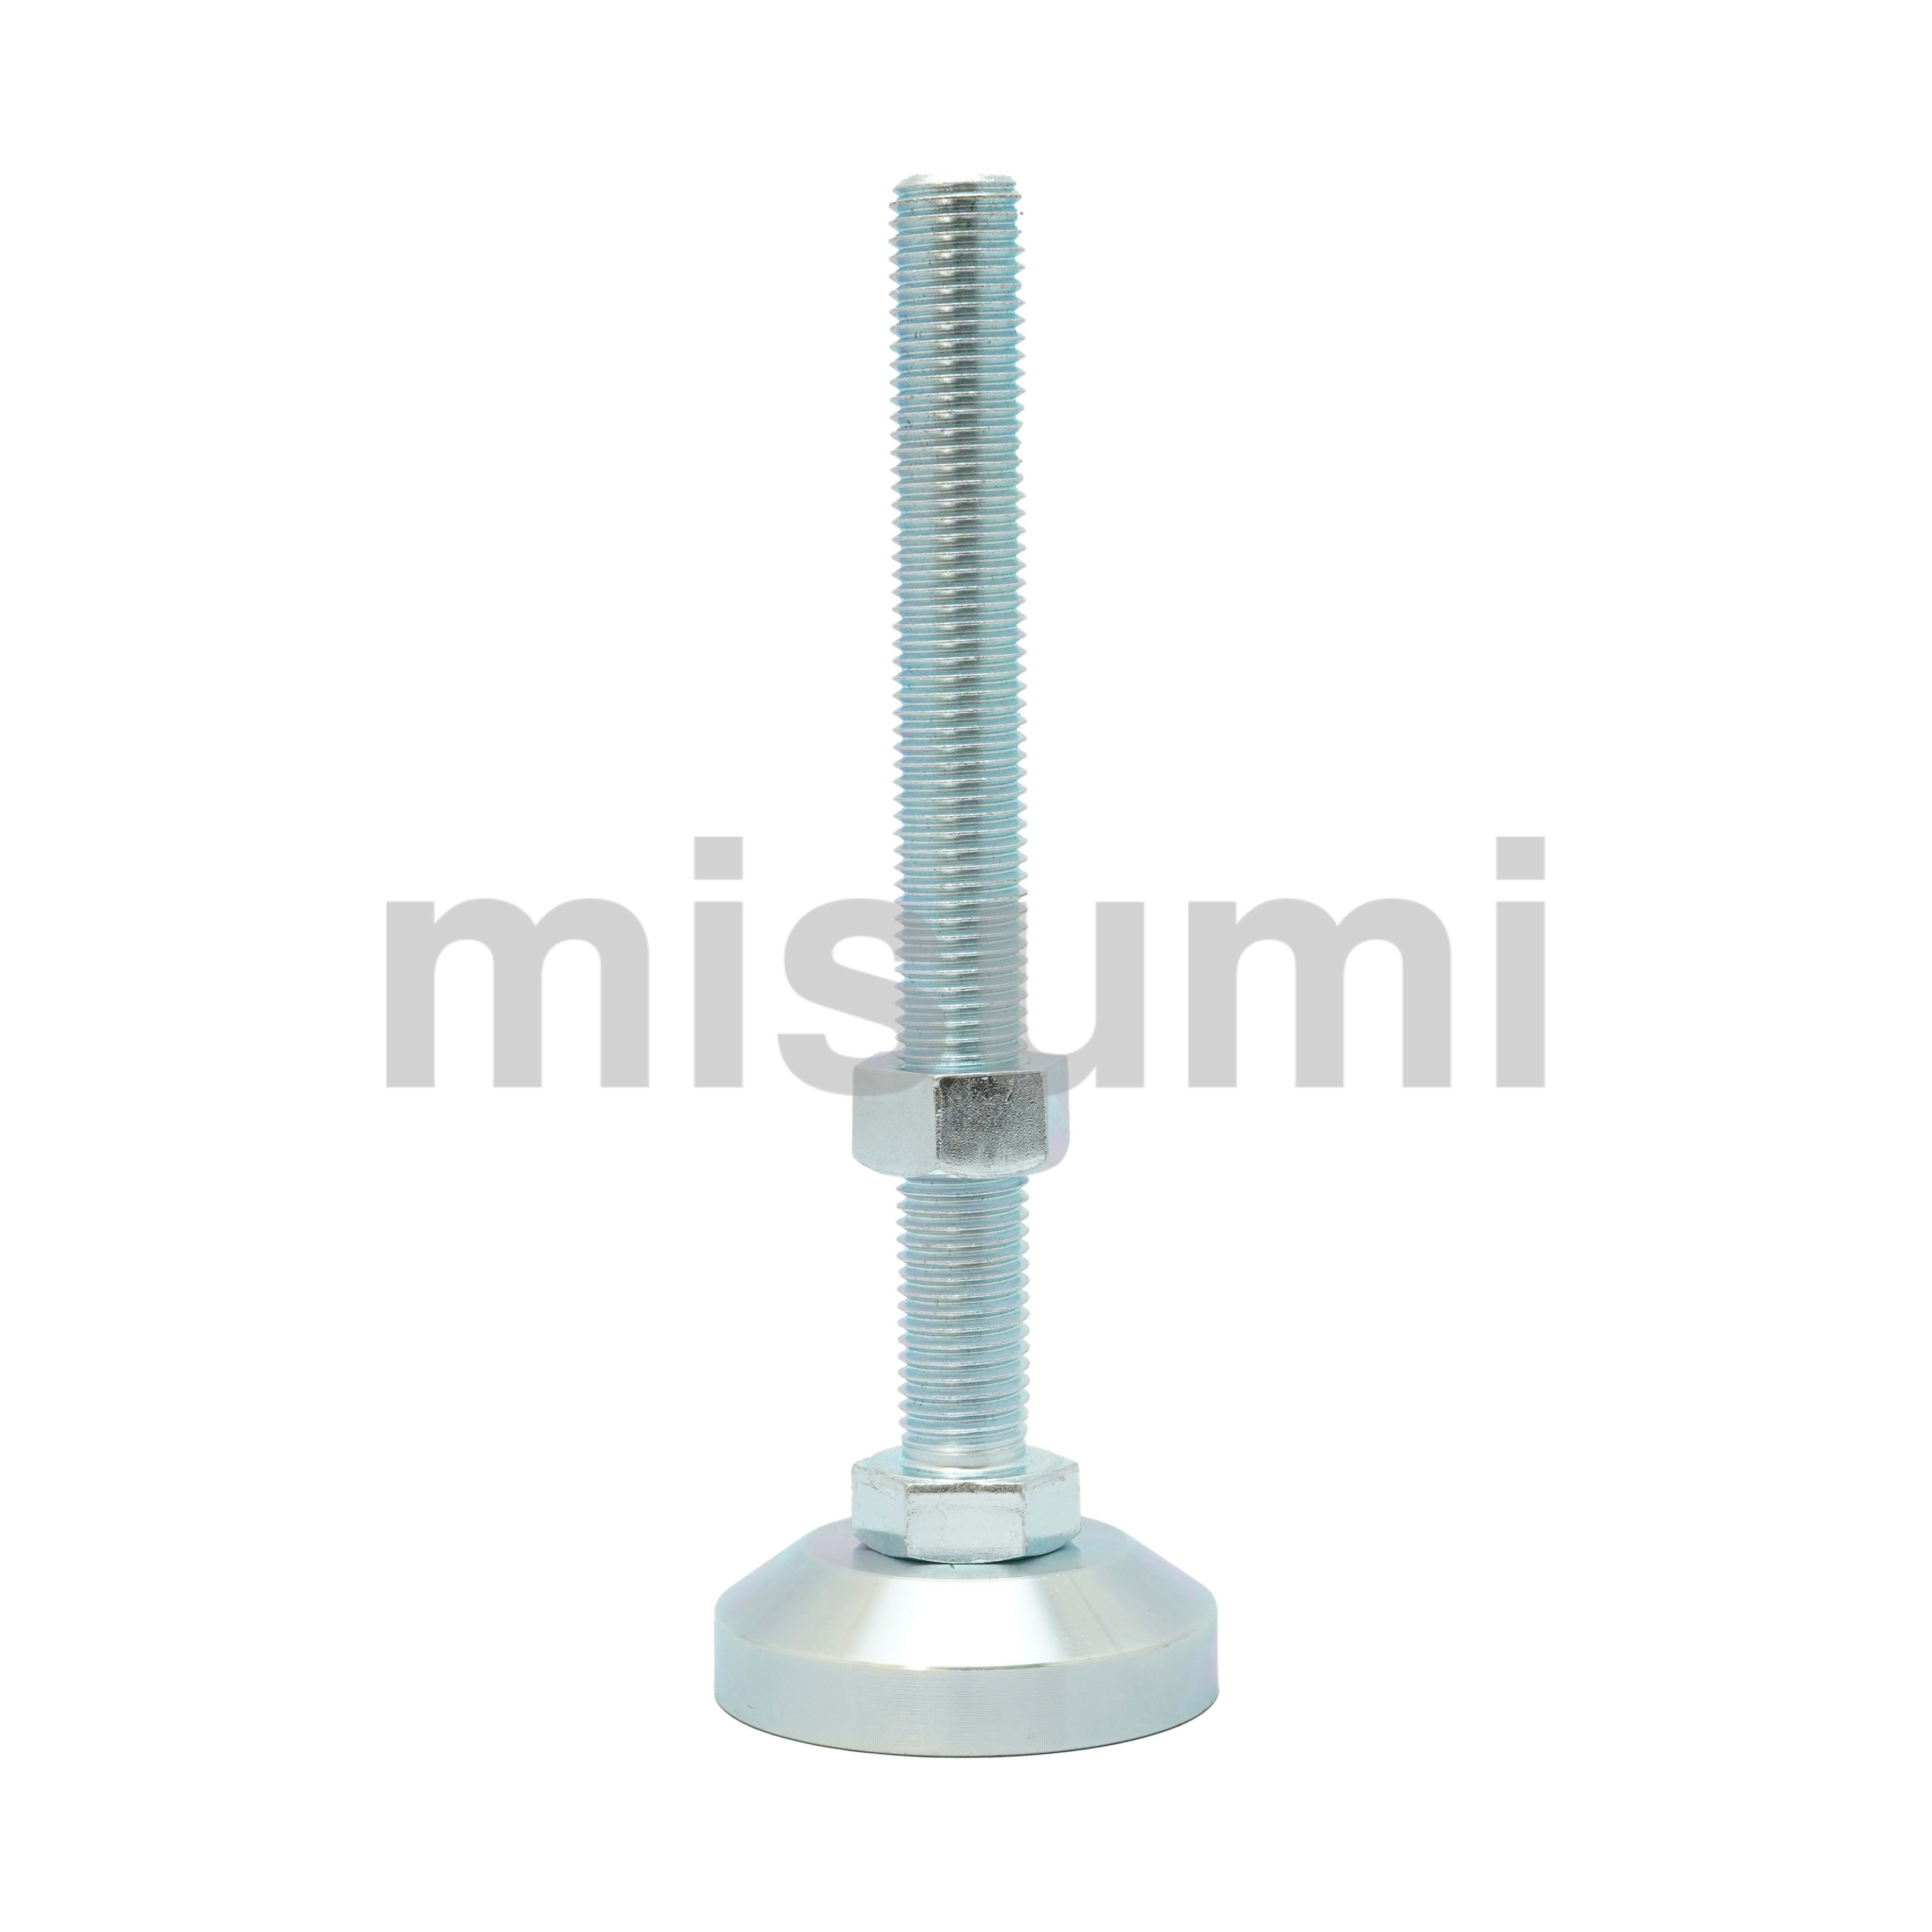 ドーム型重量物用サンアジャストボルト S–V2シリーズ サンファスナー部品 MISUMI(ミスミ)